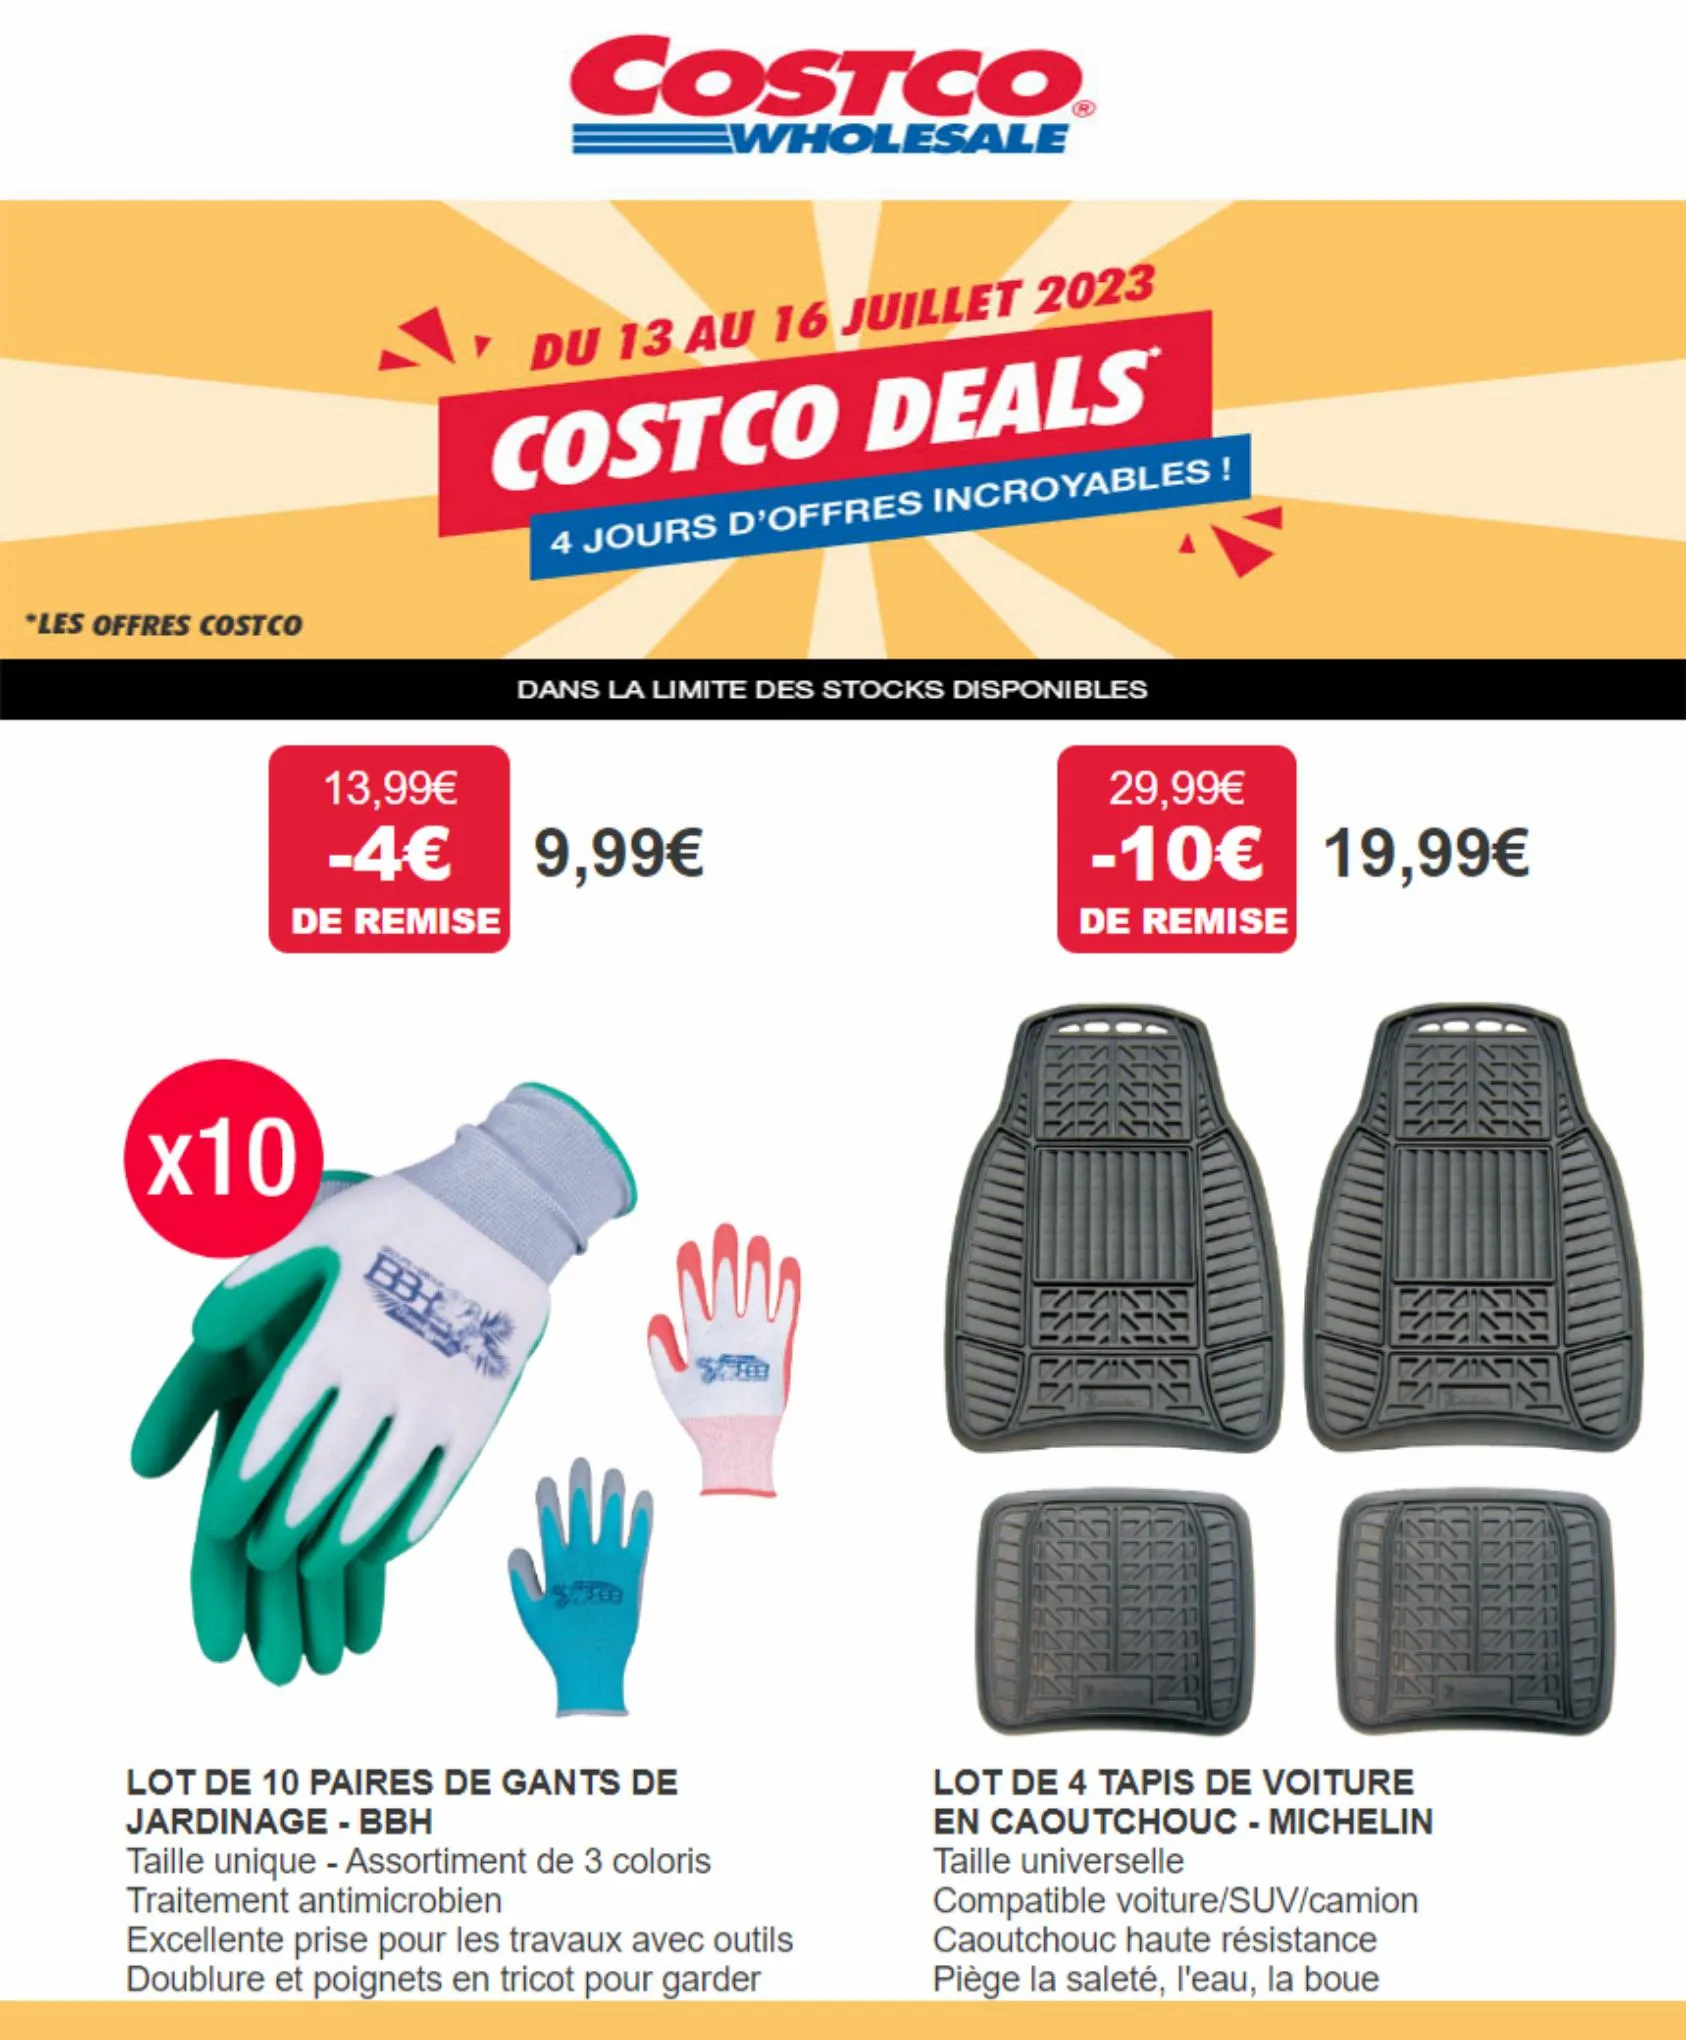 Catalogue Costco Deals 4 jours D'offres incroyables!, page 00004